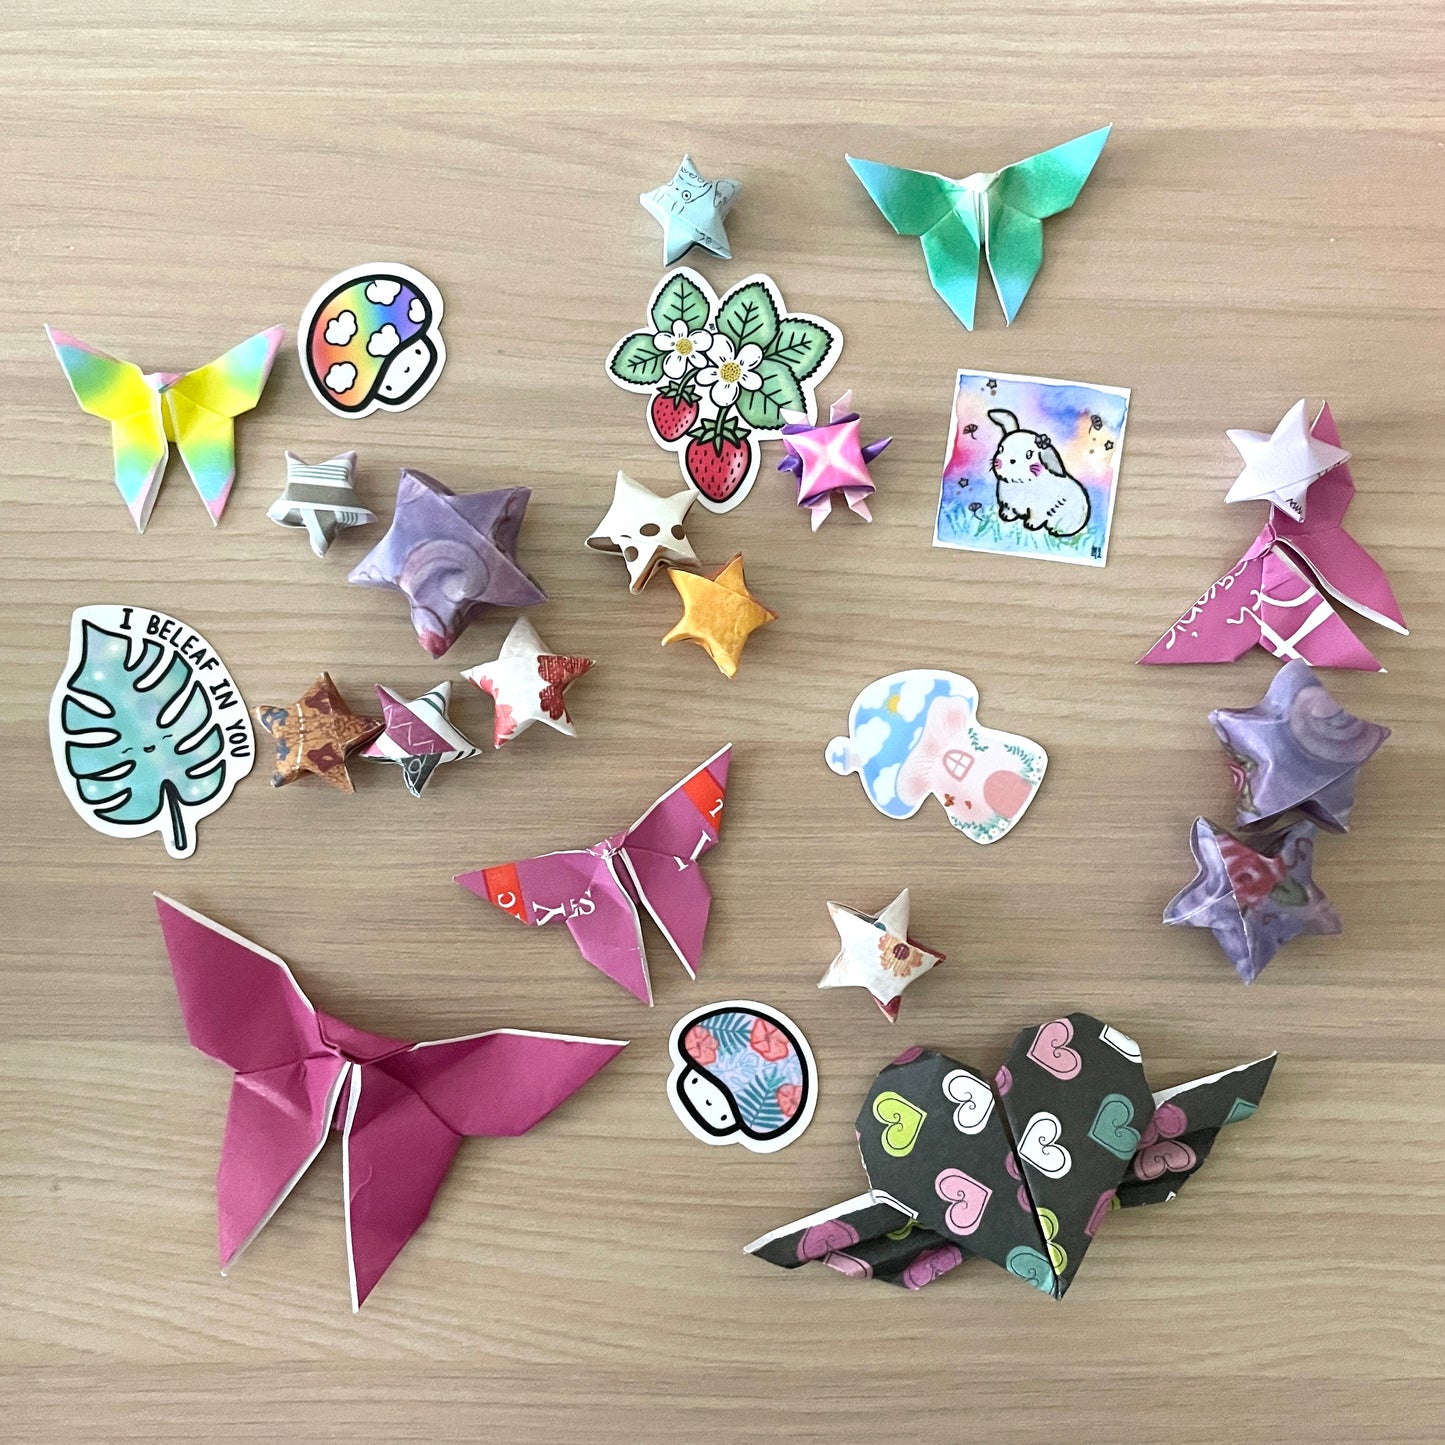 Cozy Confetti - Sticker and Origami Confetti Scoop!